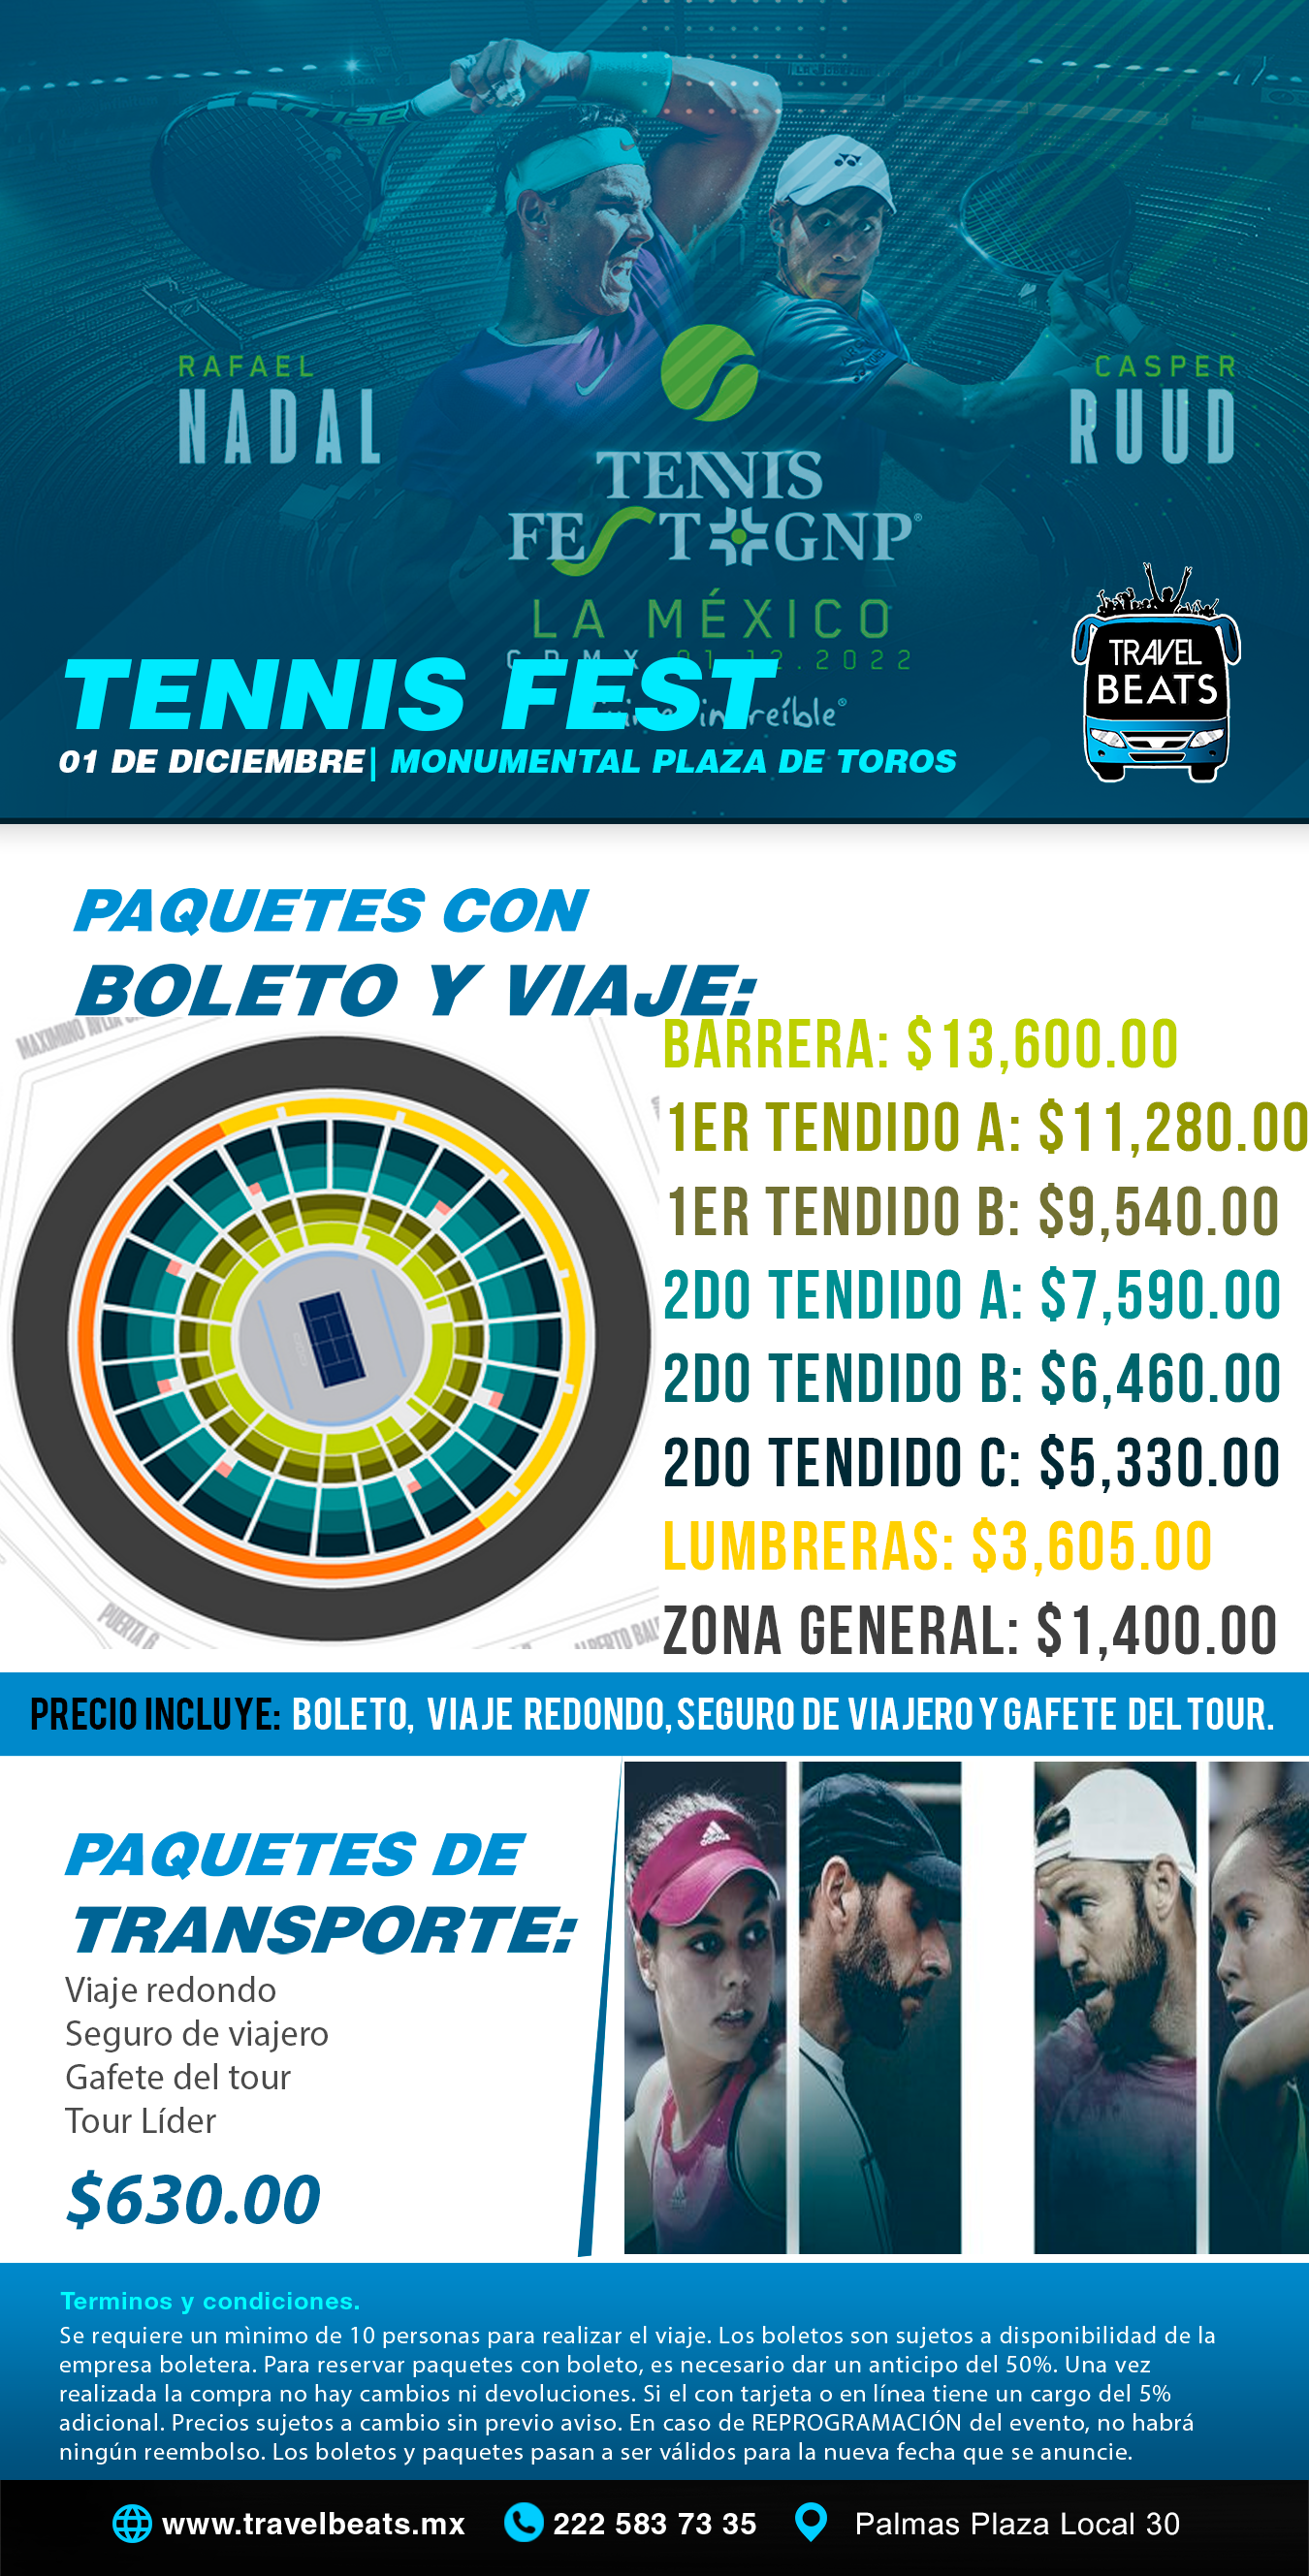 Tennis Fest 2022| Boleto y viaje desde Puebla | Travel Beats